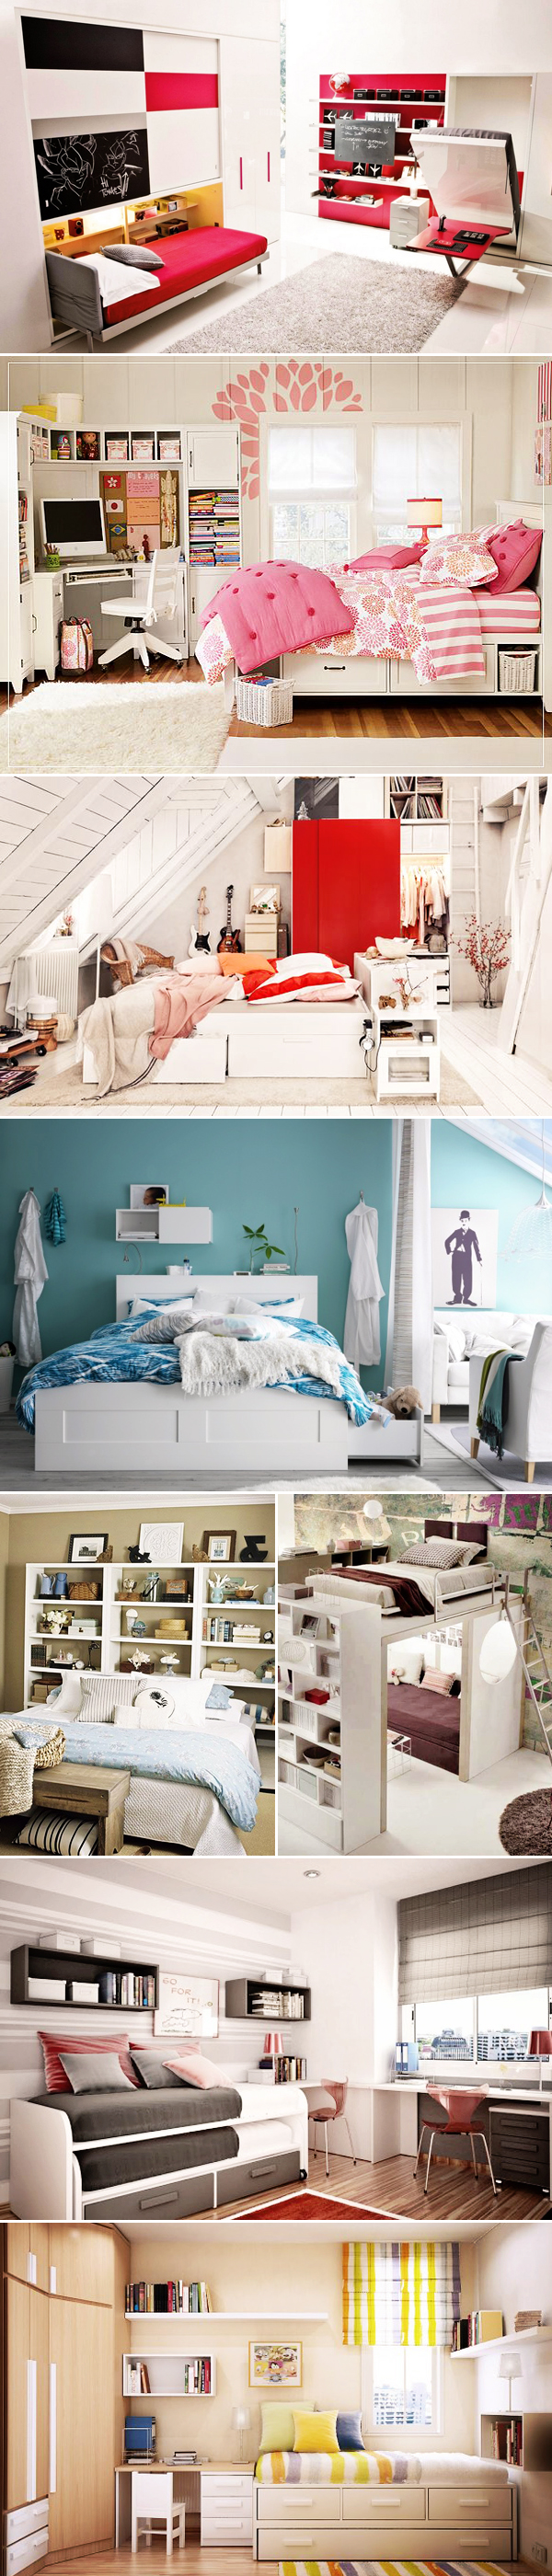 homestorage03-bedroom